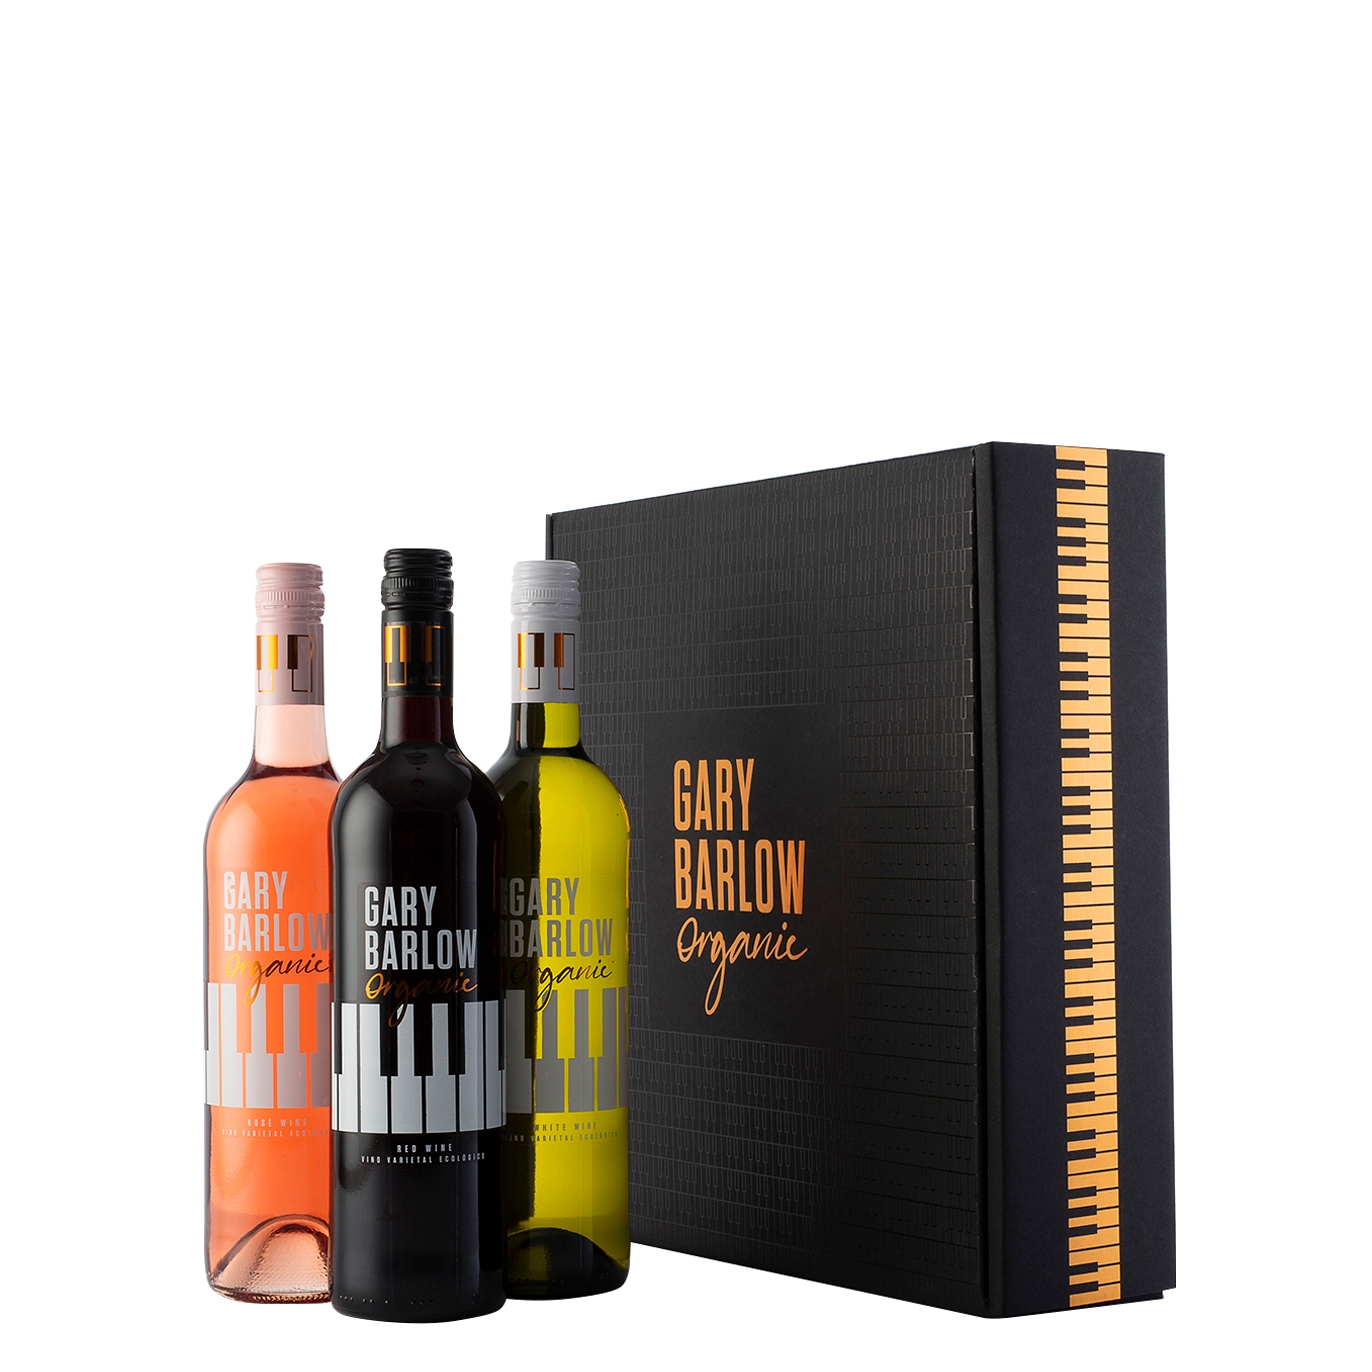 Gary Barlow Organic Wines Gary Barlow Organic Wine Trio - Case Of Three